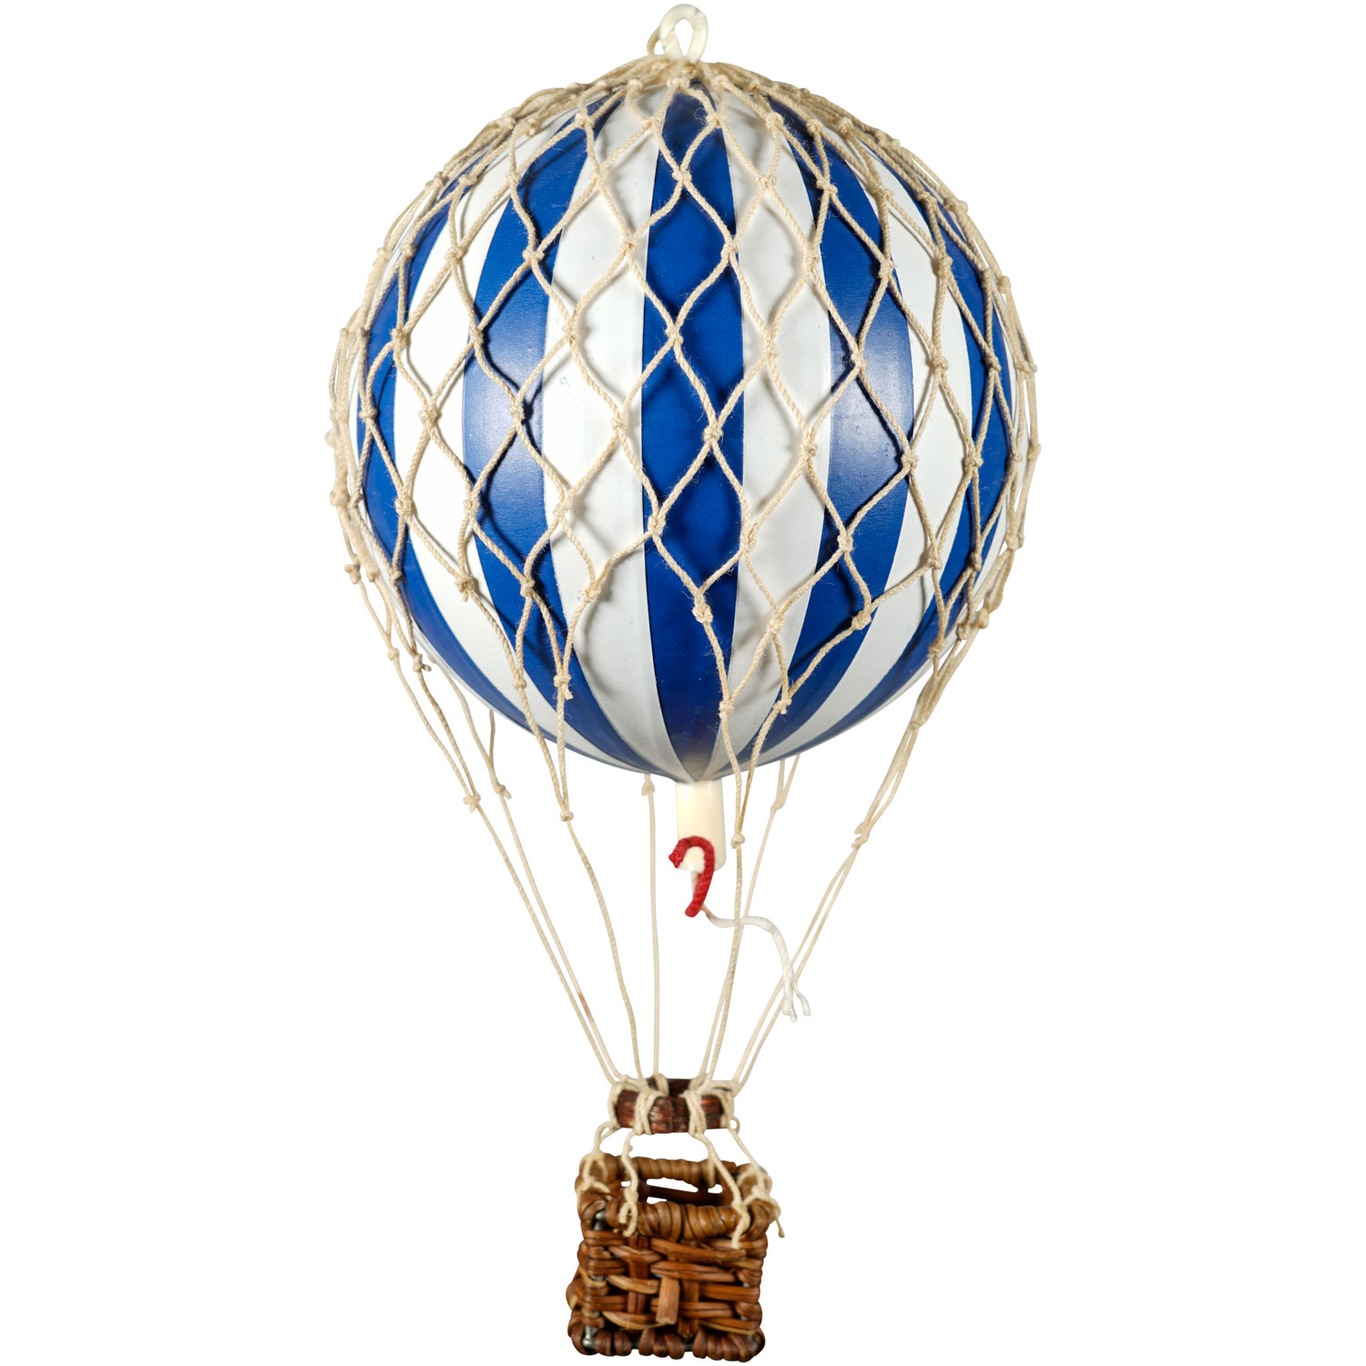 Floating The Skies Luftballon 13x8.5 cm, Blå / Hvid